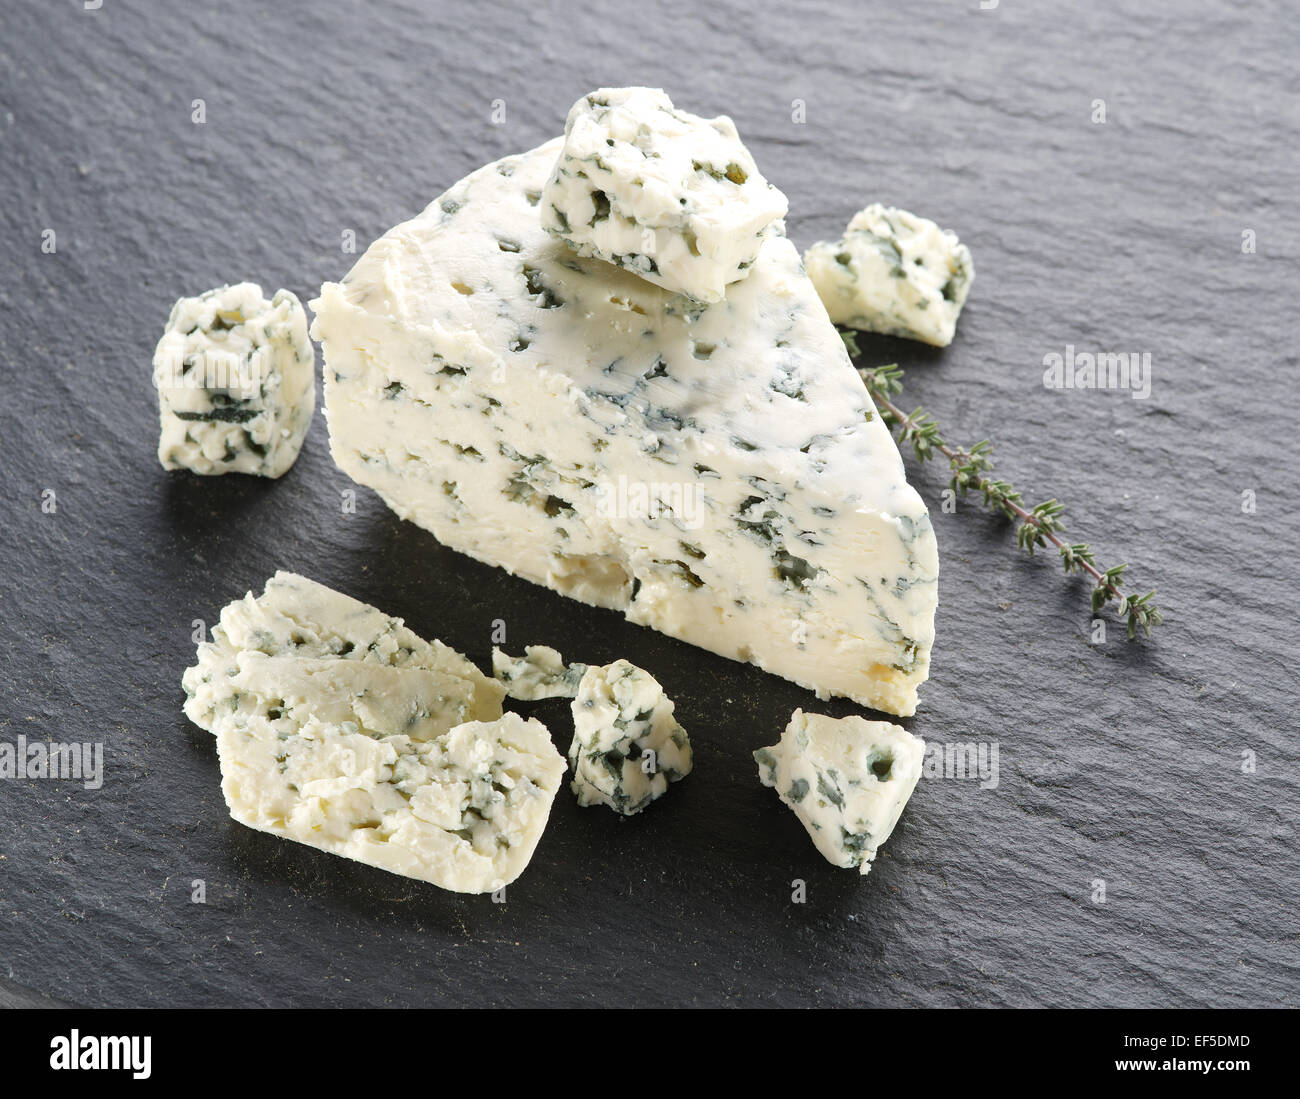 Tranches de fromage bleu danois sur la surface de la pierre grise. Banque D'Images